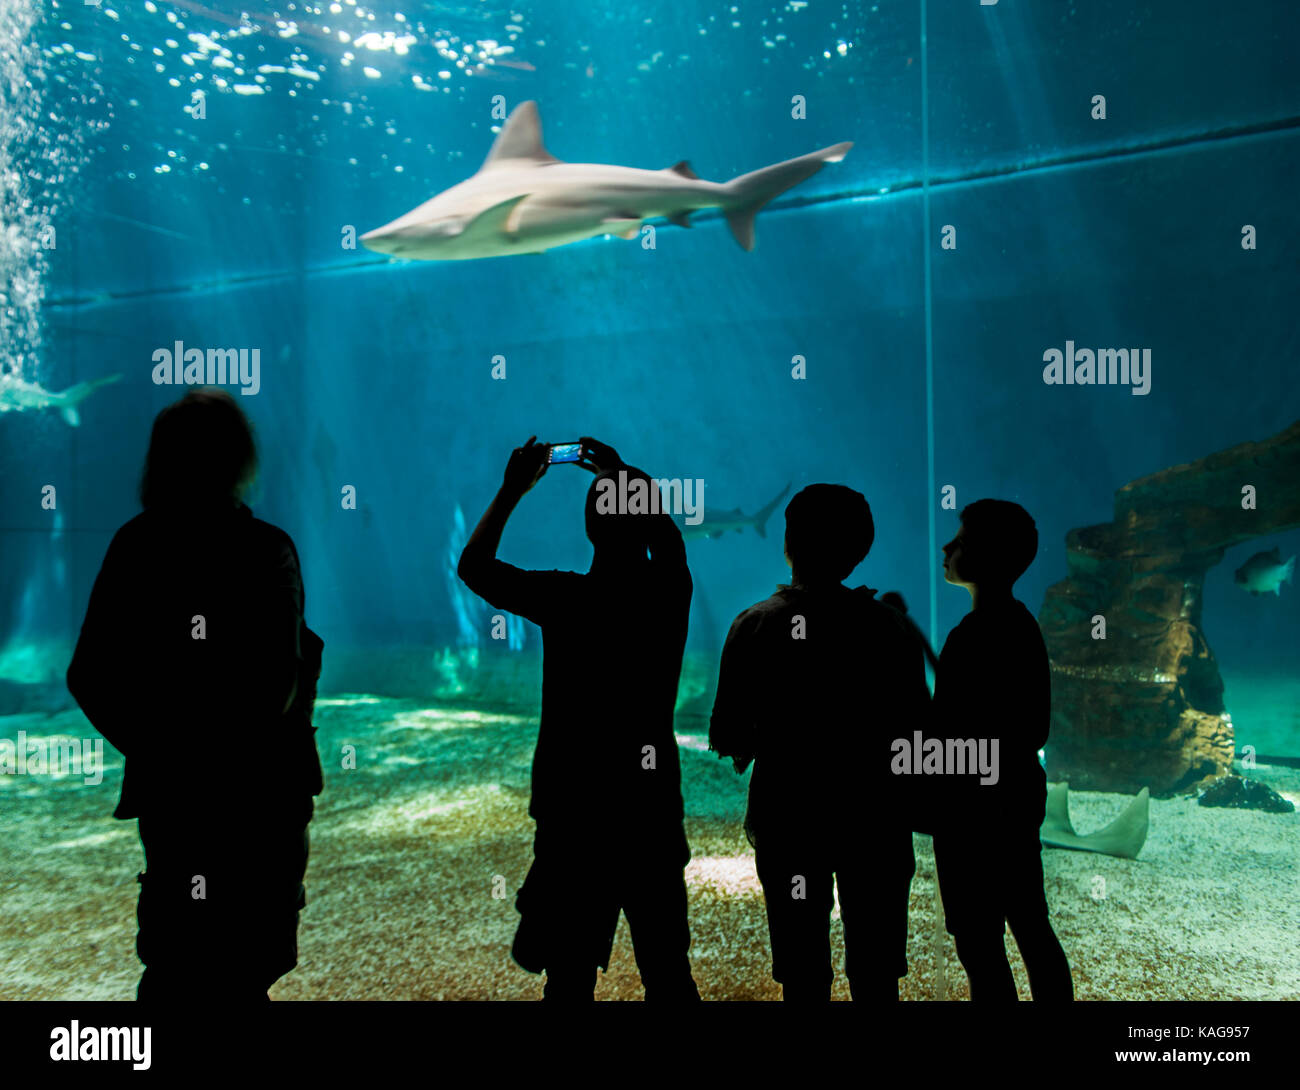 Genua, Italien - Juni 2, 2015: Nicht identifizierte Personen in das Aquarium von Genua. Das Aquarium von Genua ist das größte Aquarium in Italien und zu den größten in der EU Stockfoto